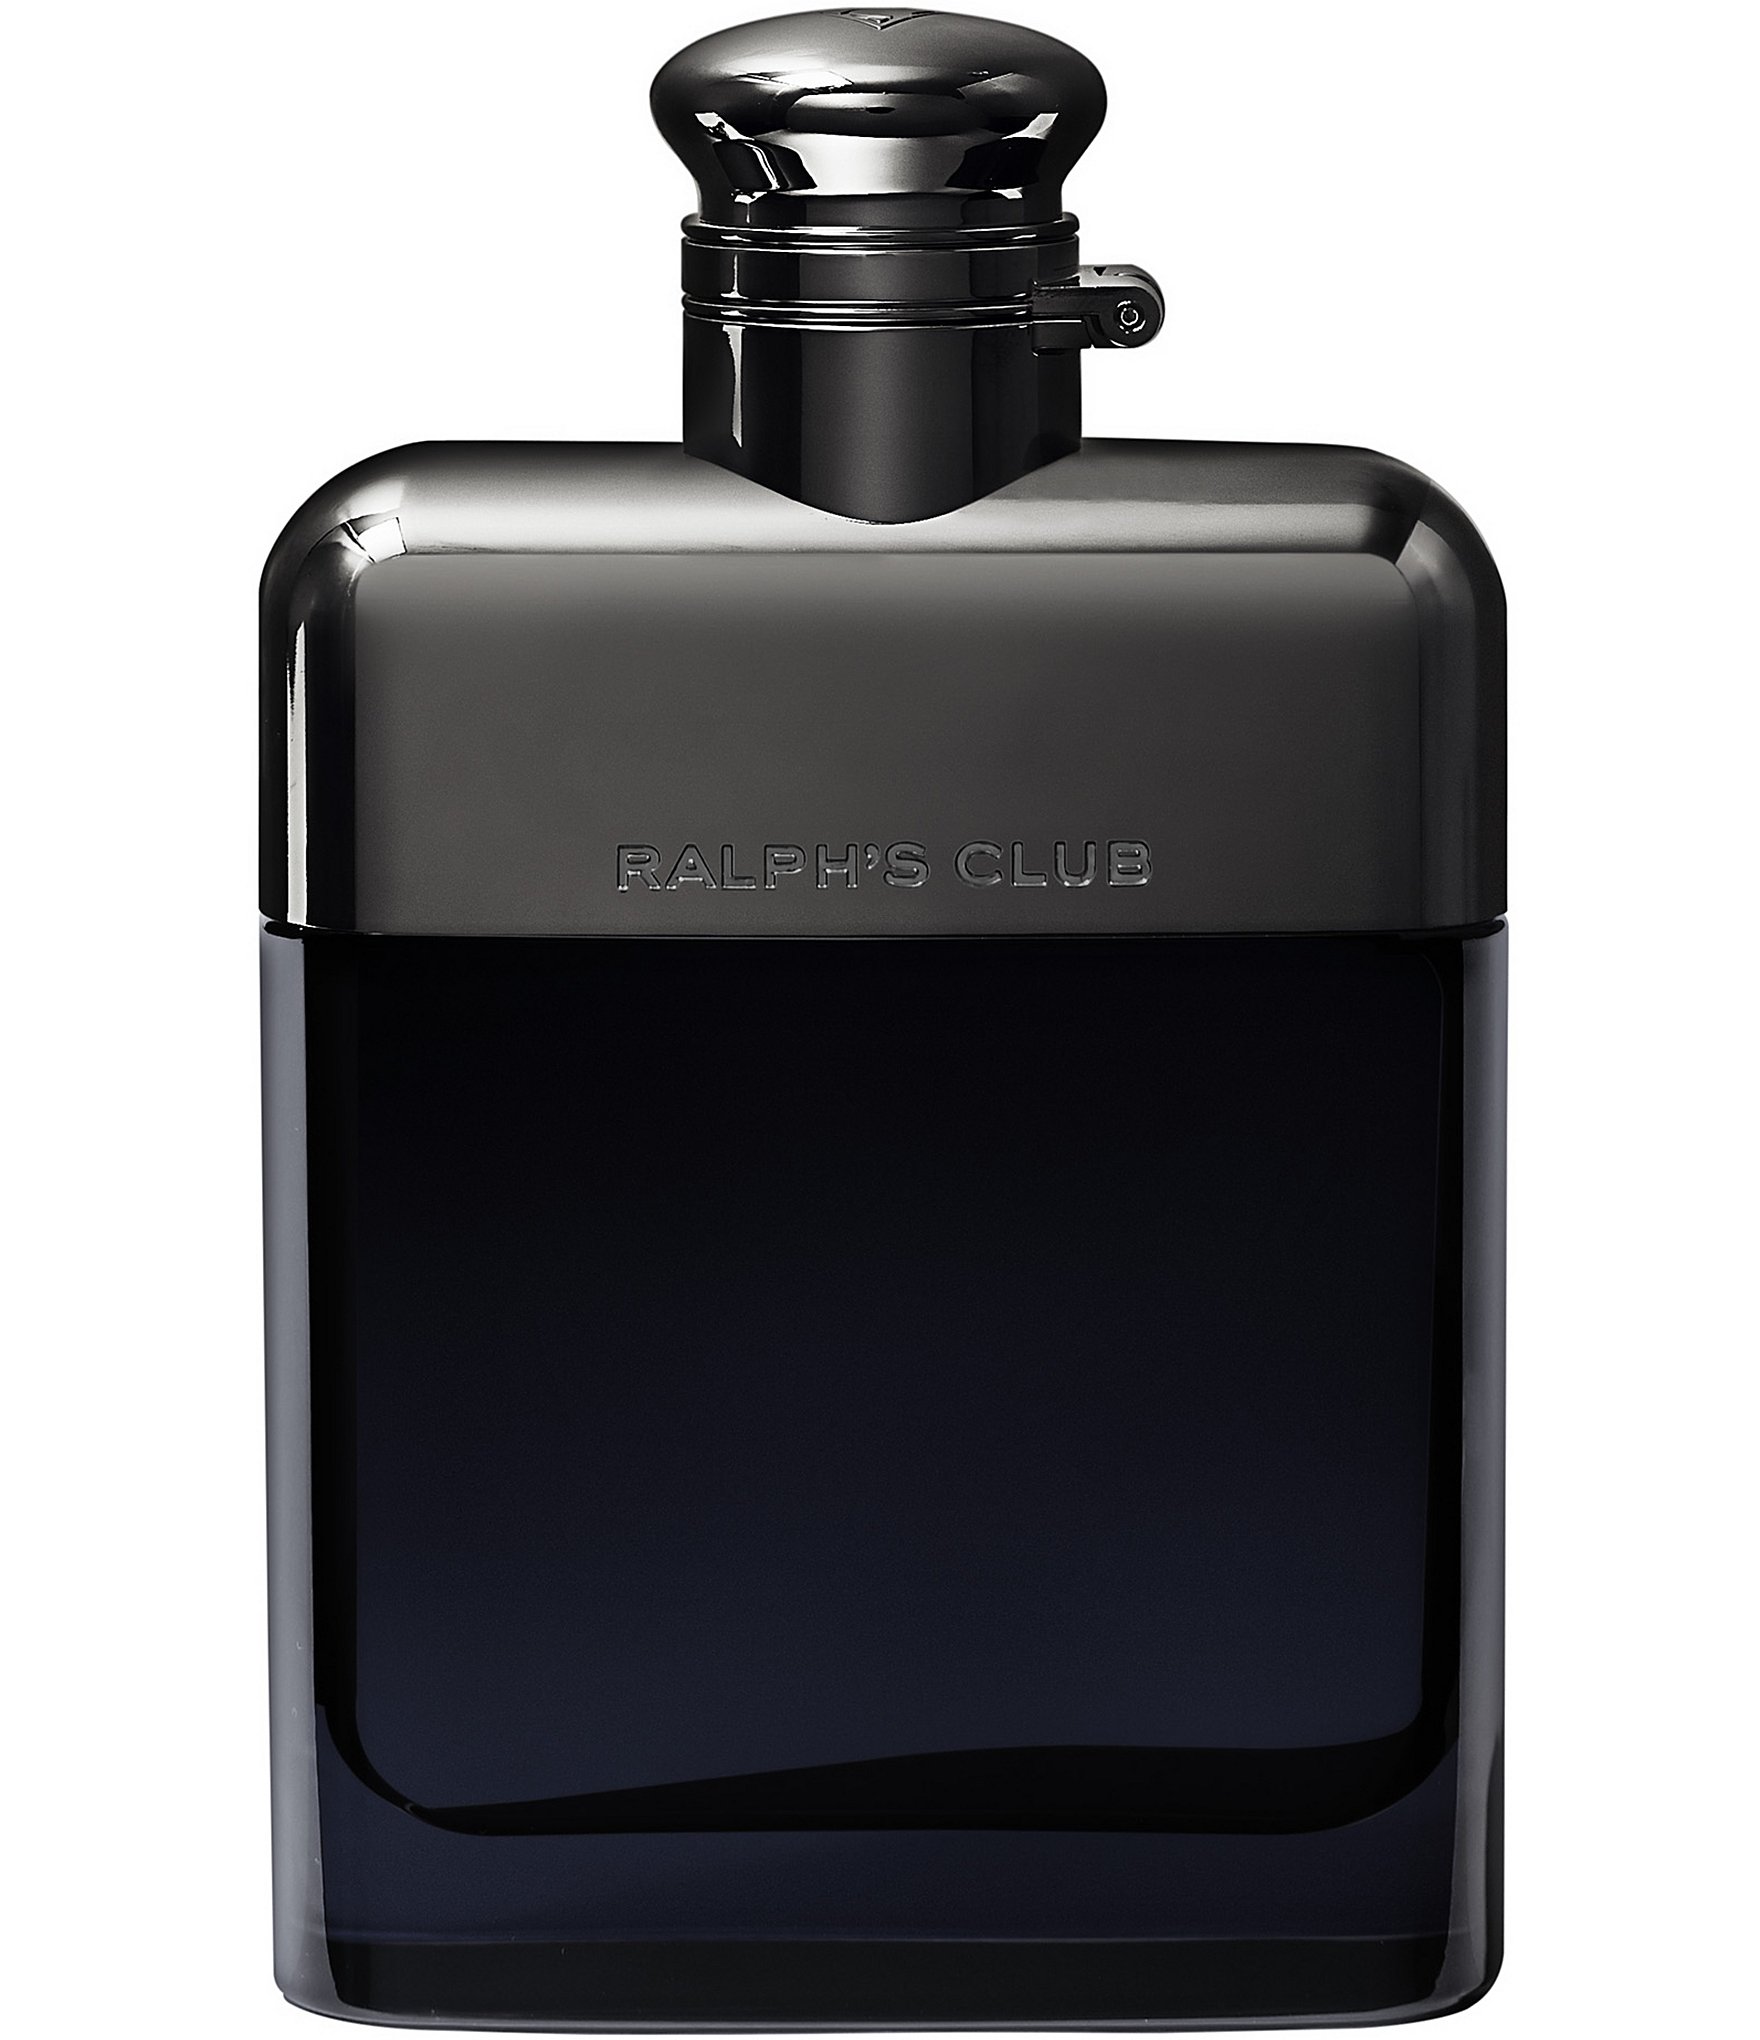 Ralph Lauren Ralph's Club Eau de Parfum | Dillard's